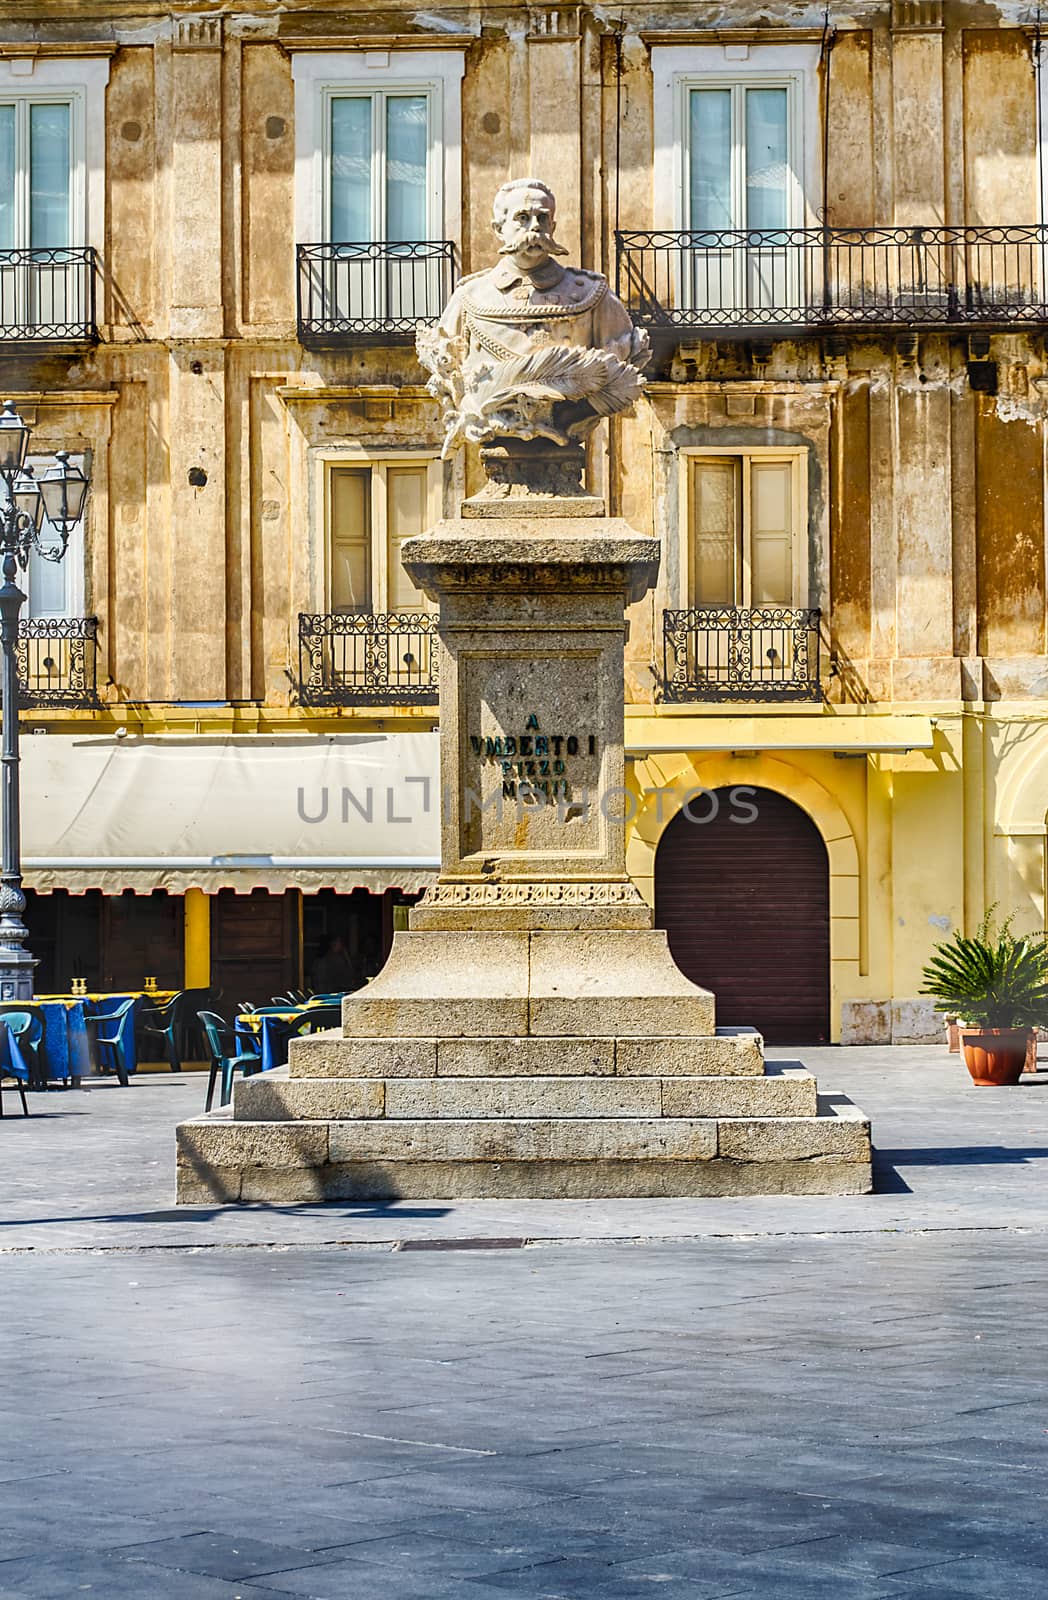 King Umberto I Monument by marcorubino